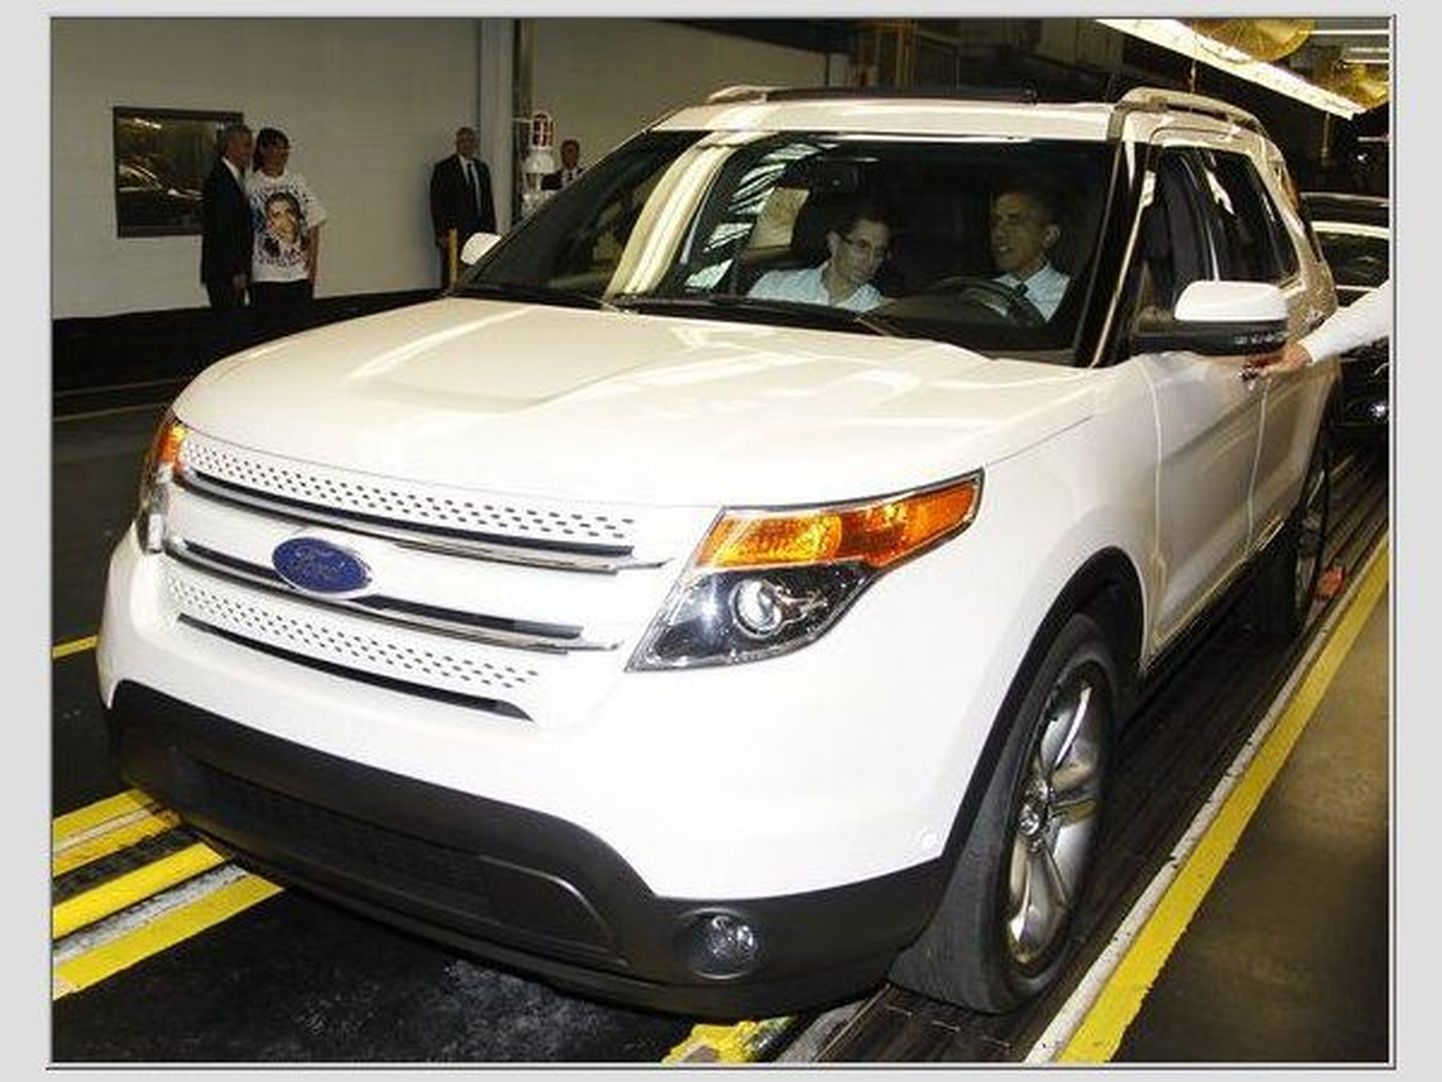 USA president Barack Obama istumas 2011. aasta Ford Exploreri roolis Chicago tehases aastal 2010.